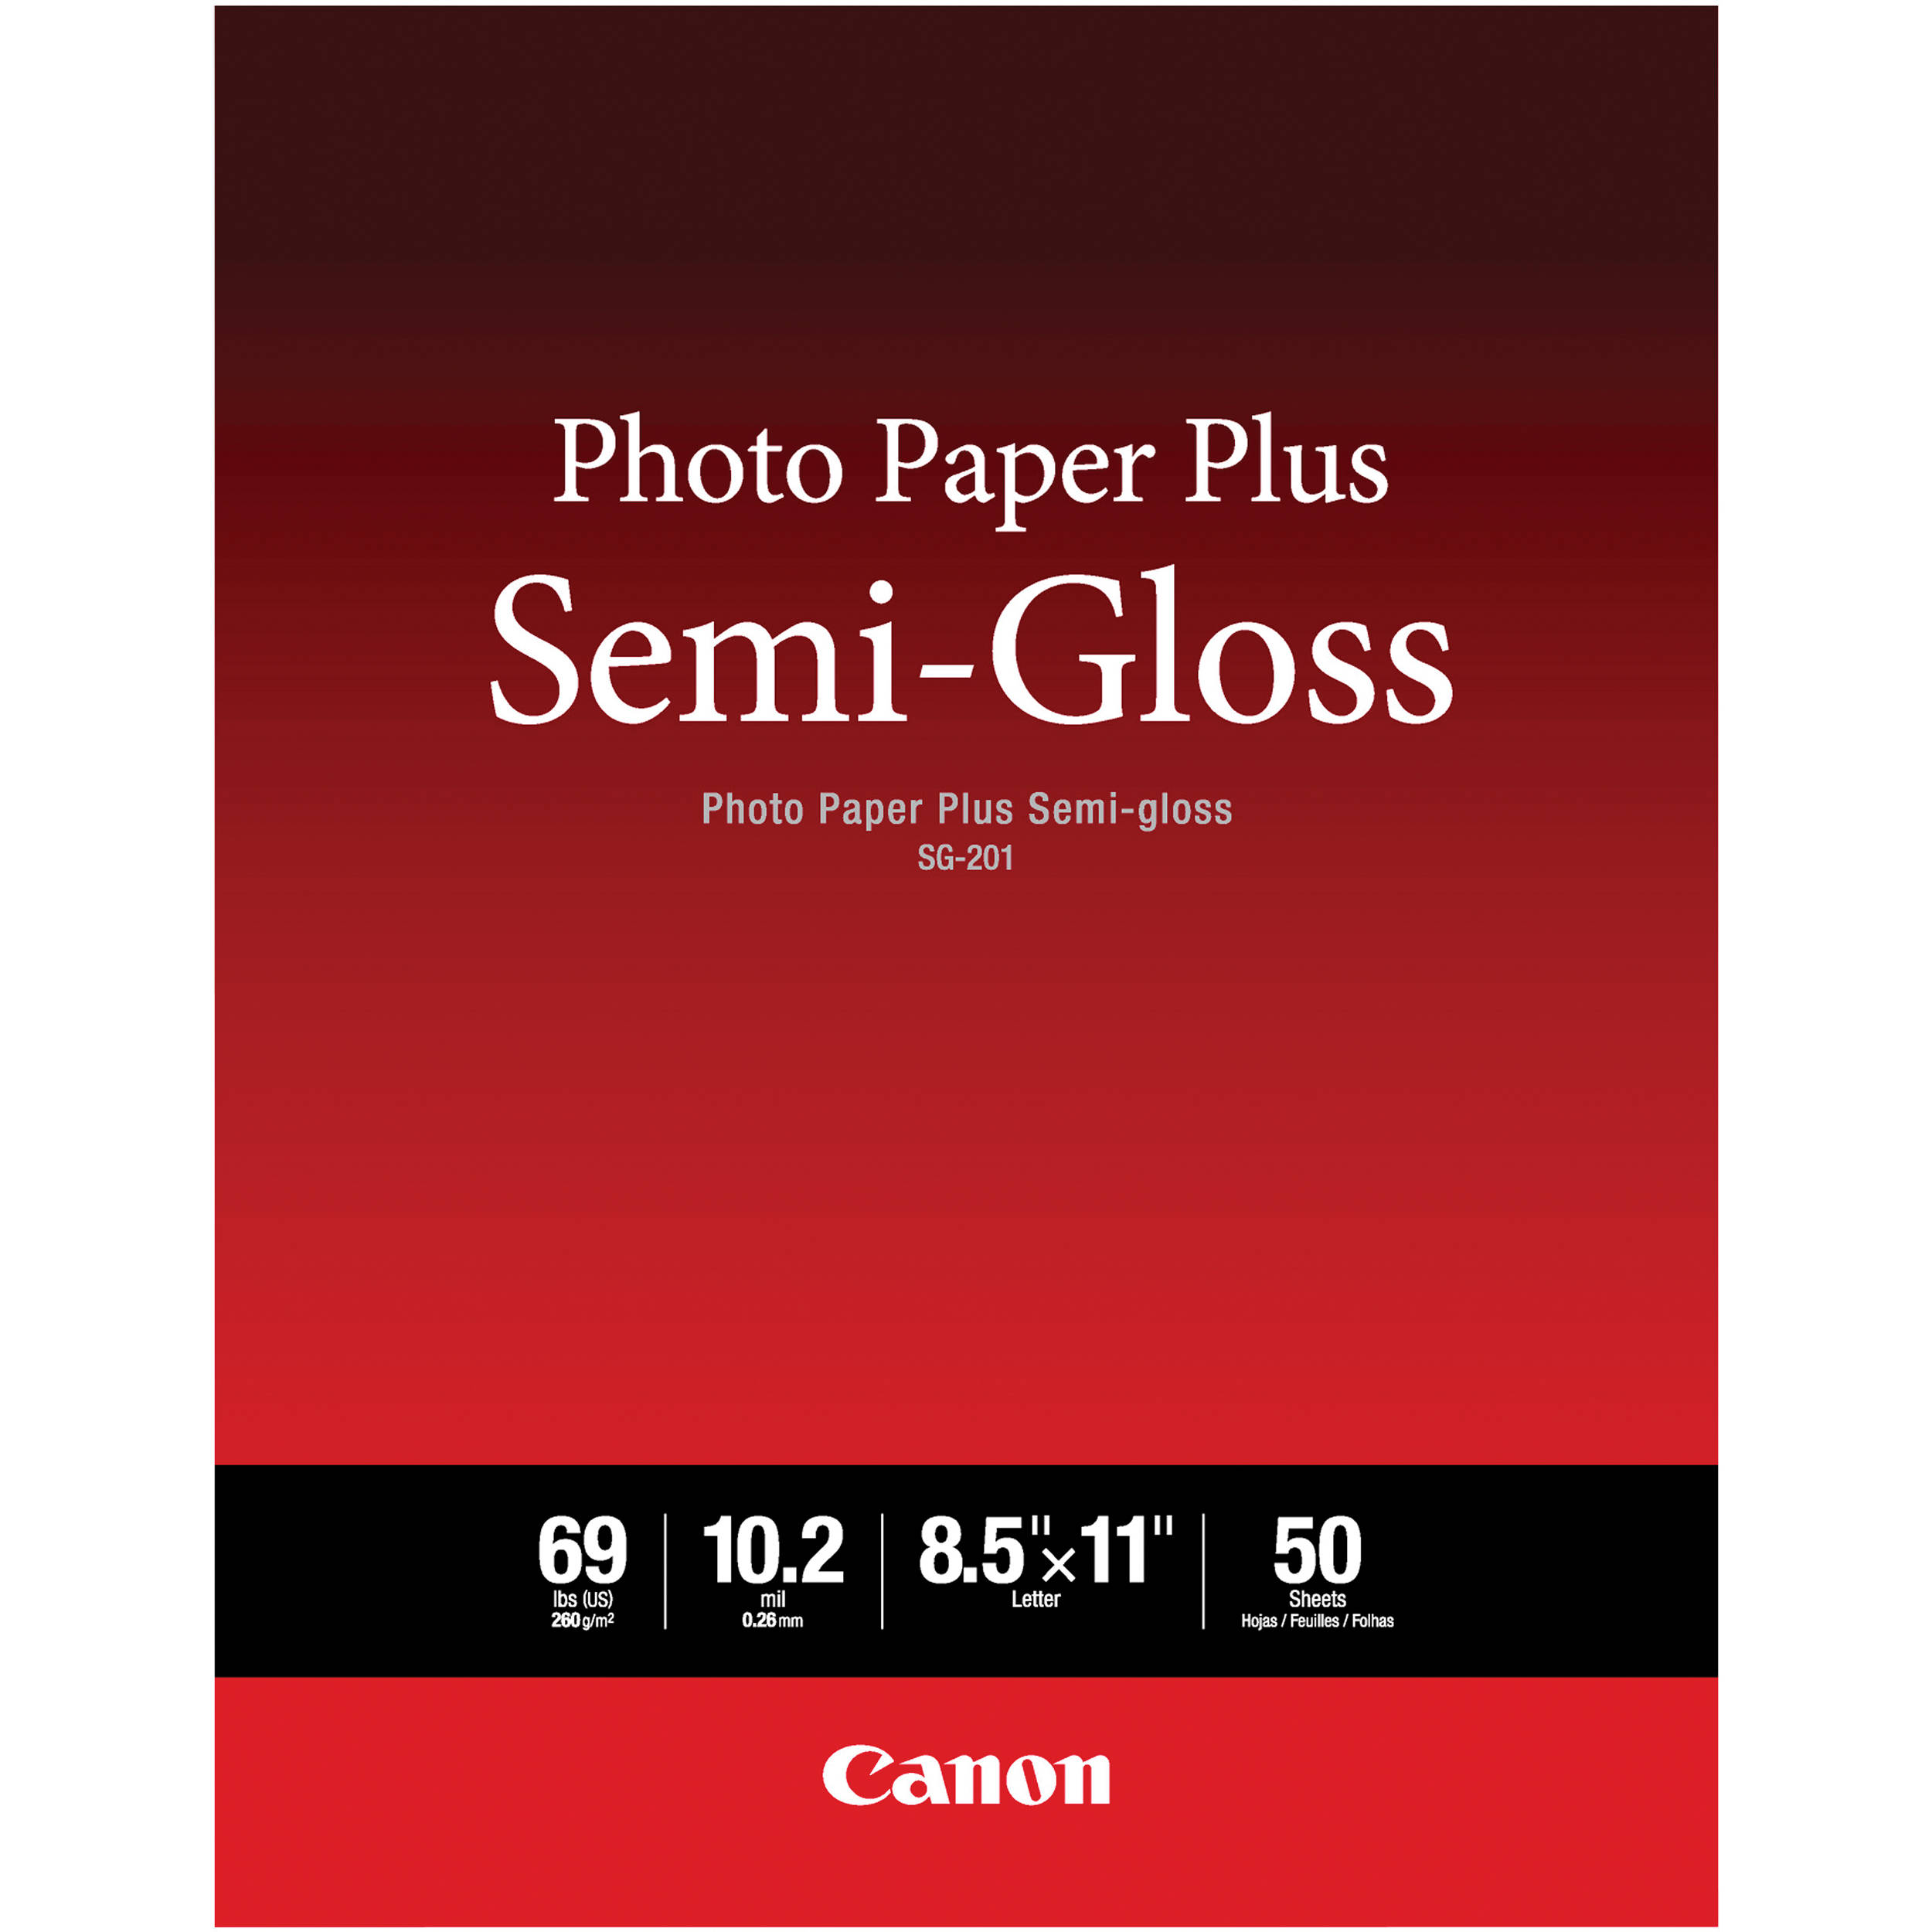 Canon SG-201 Photo Paper Plus Semi-Gloss (8.5 x 11", 50 Sheets)